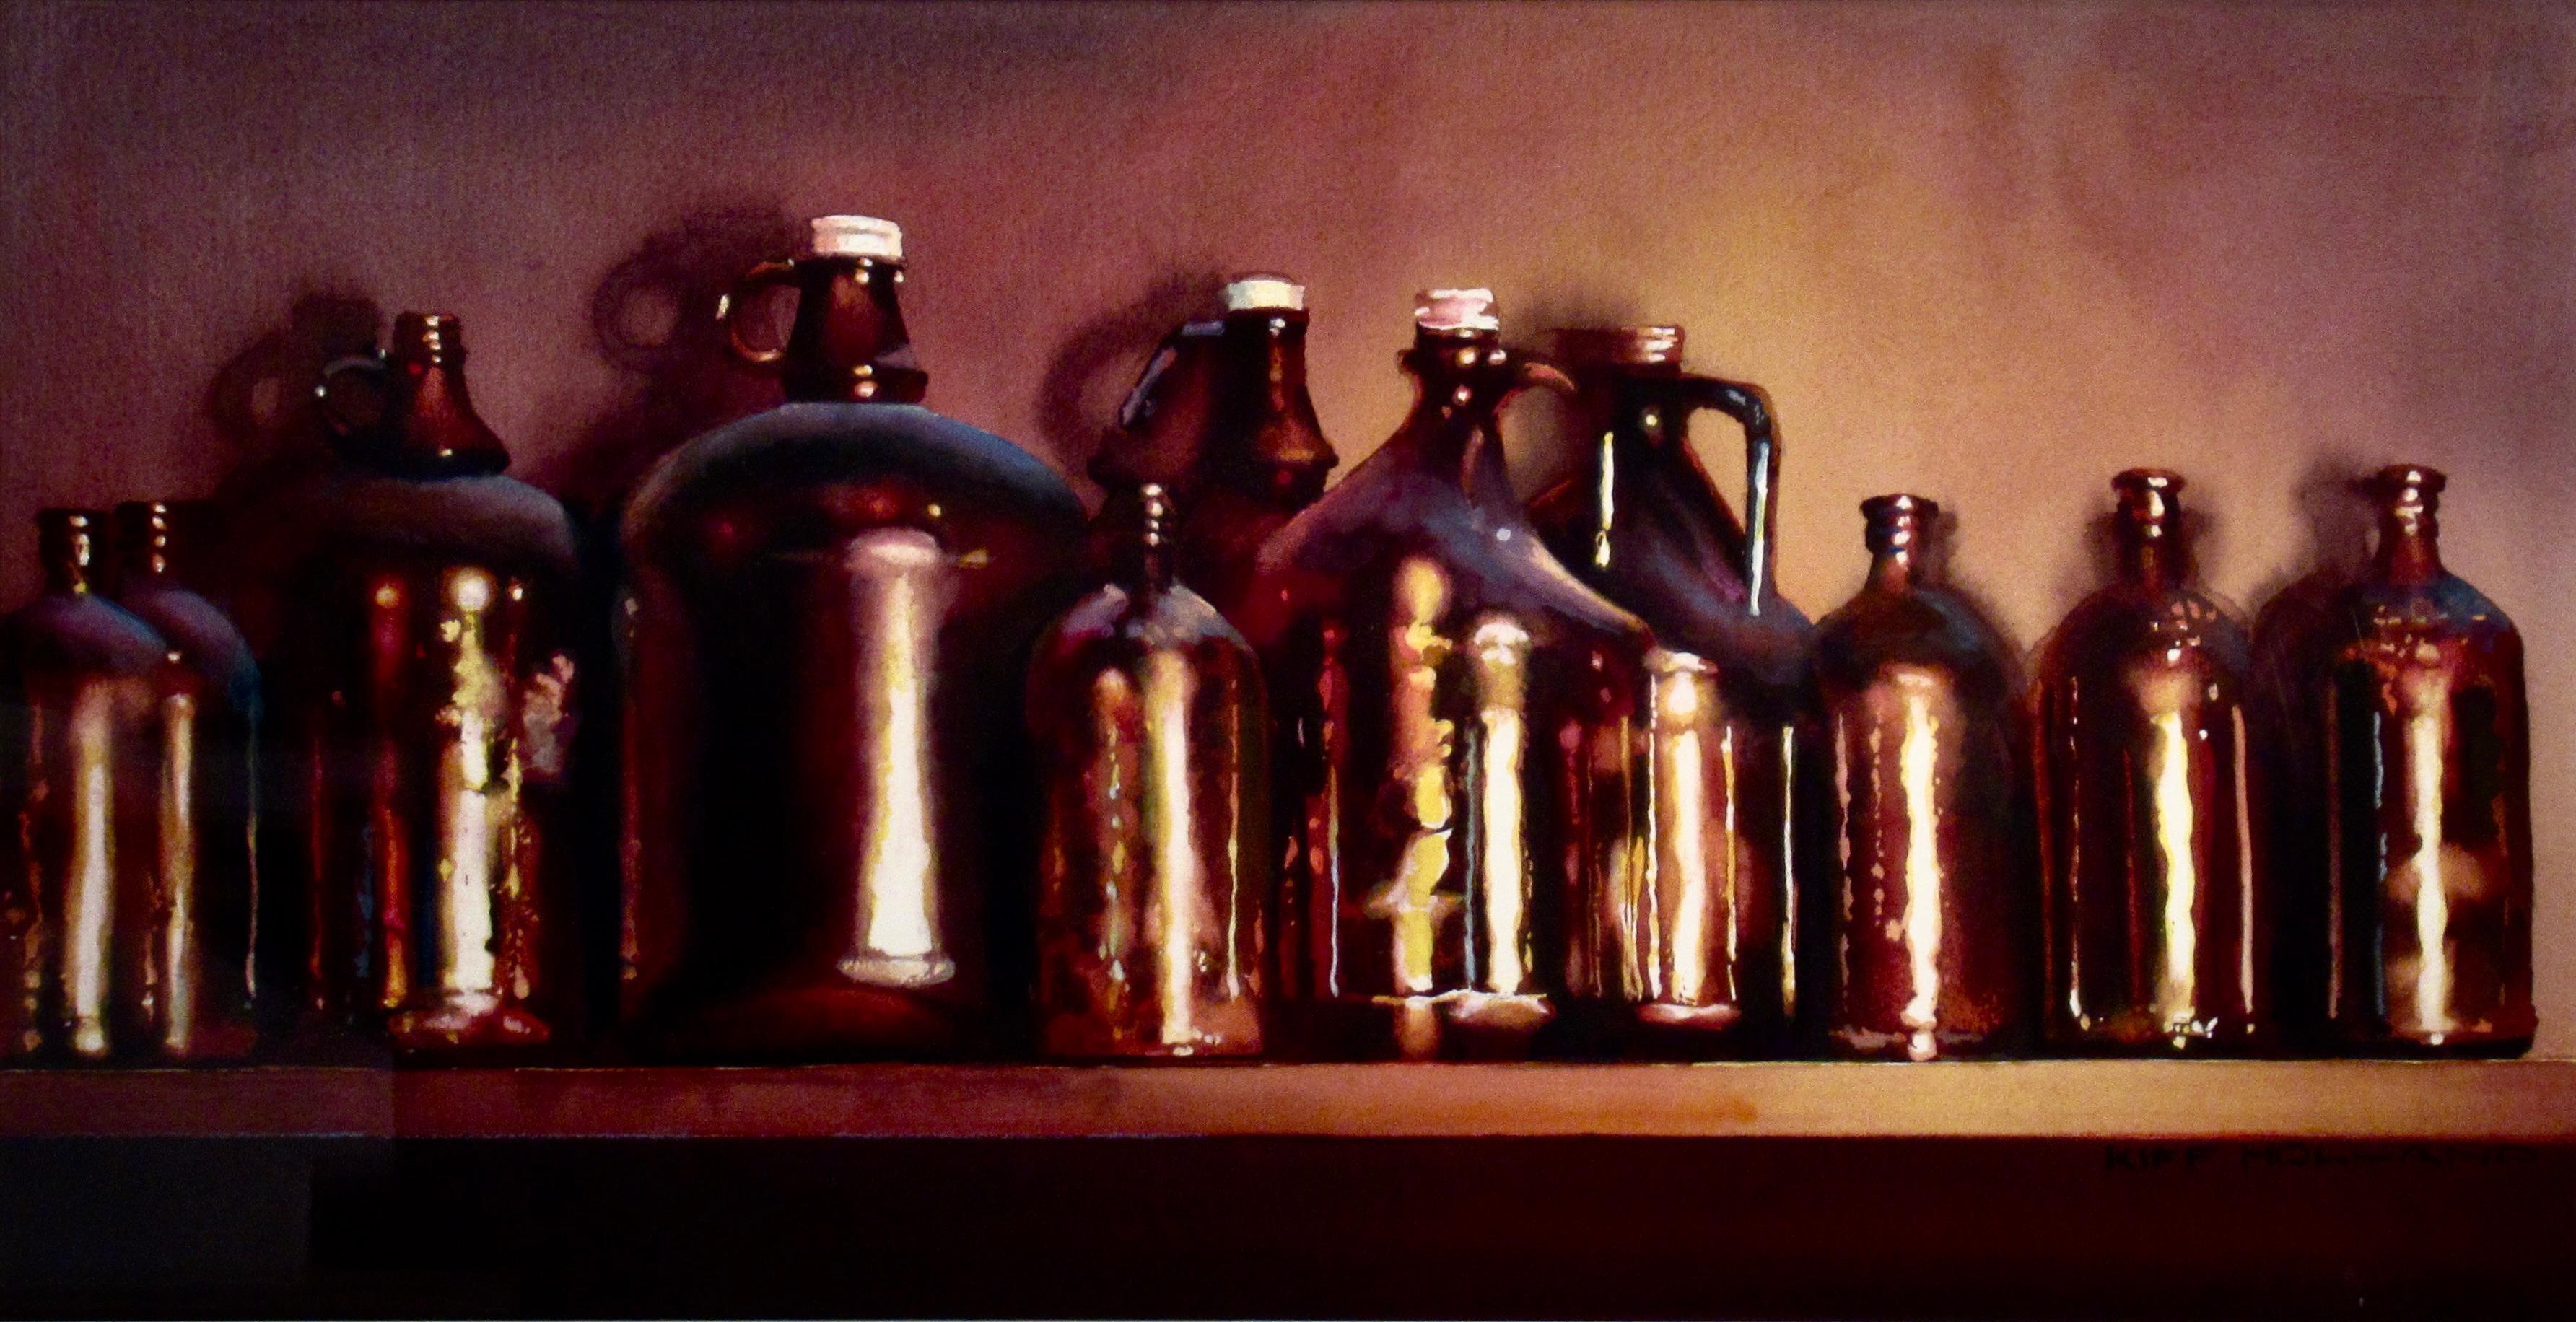 Ten Bottles - Art by Kiff Holland